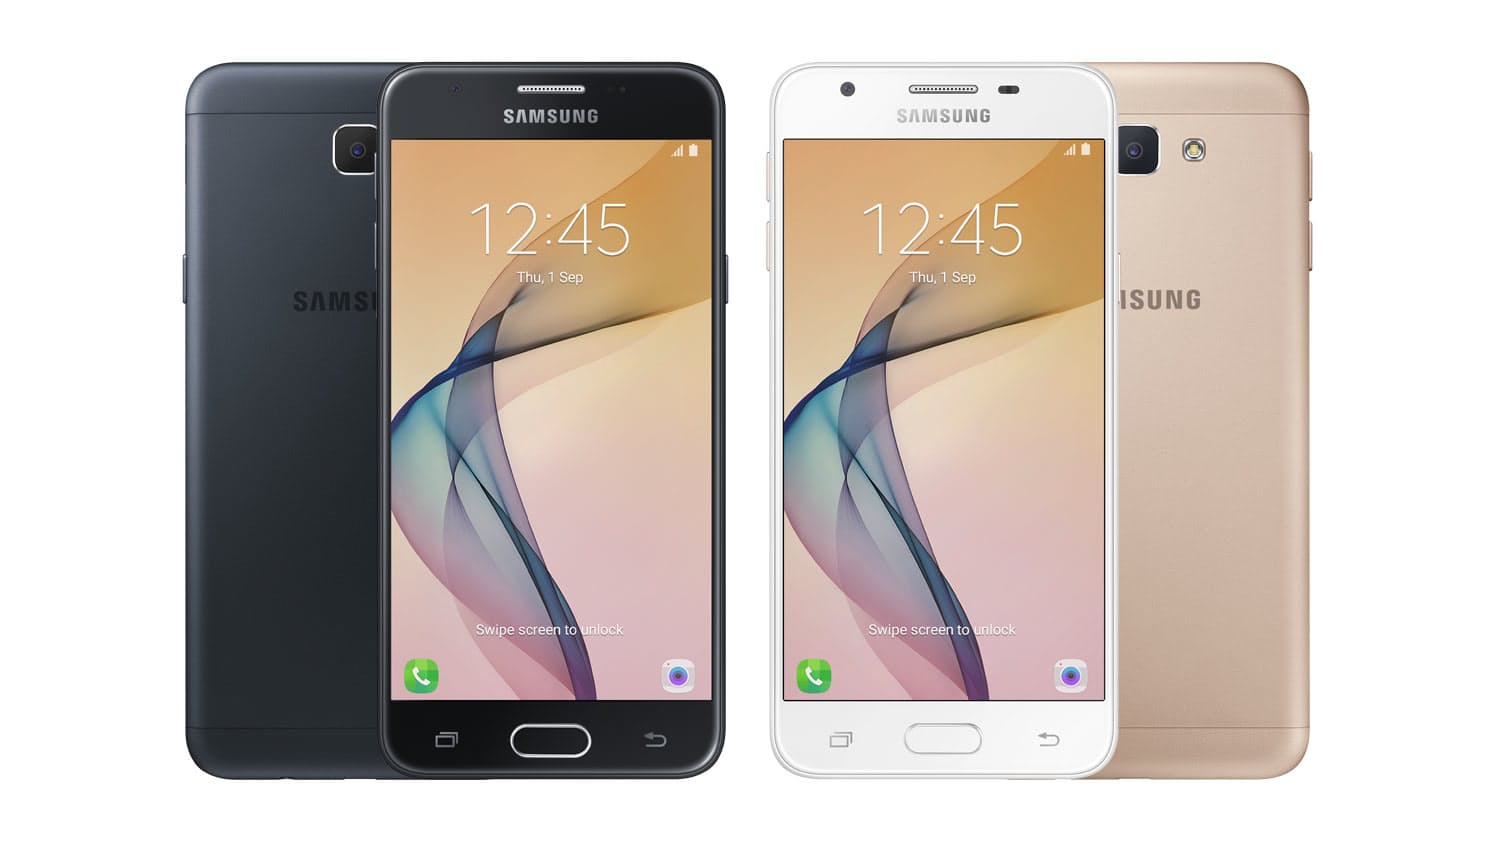 Daftar Kelebihan Dan Kekurangan Samsung Galaxy J5 Pro